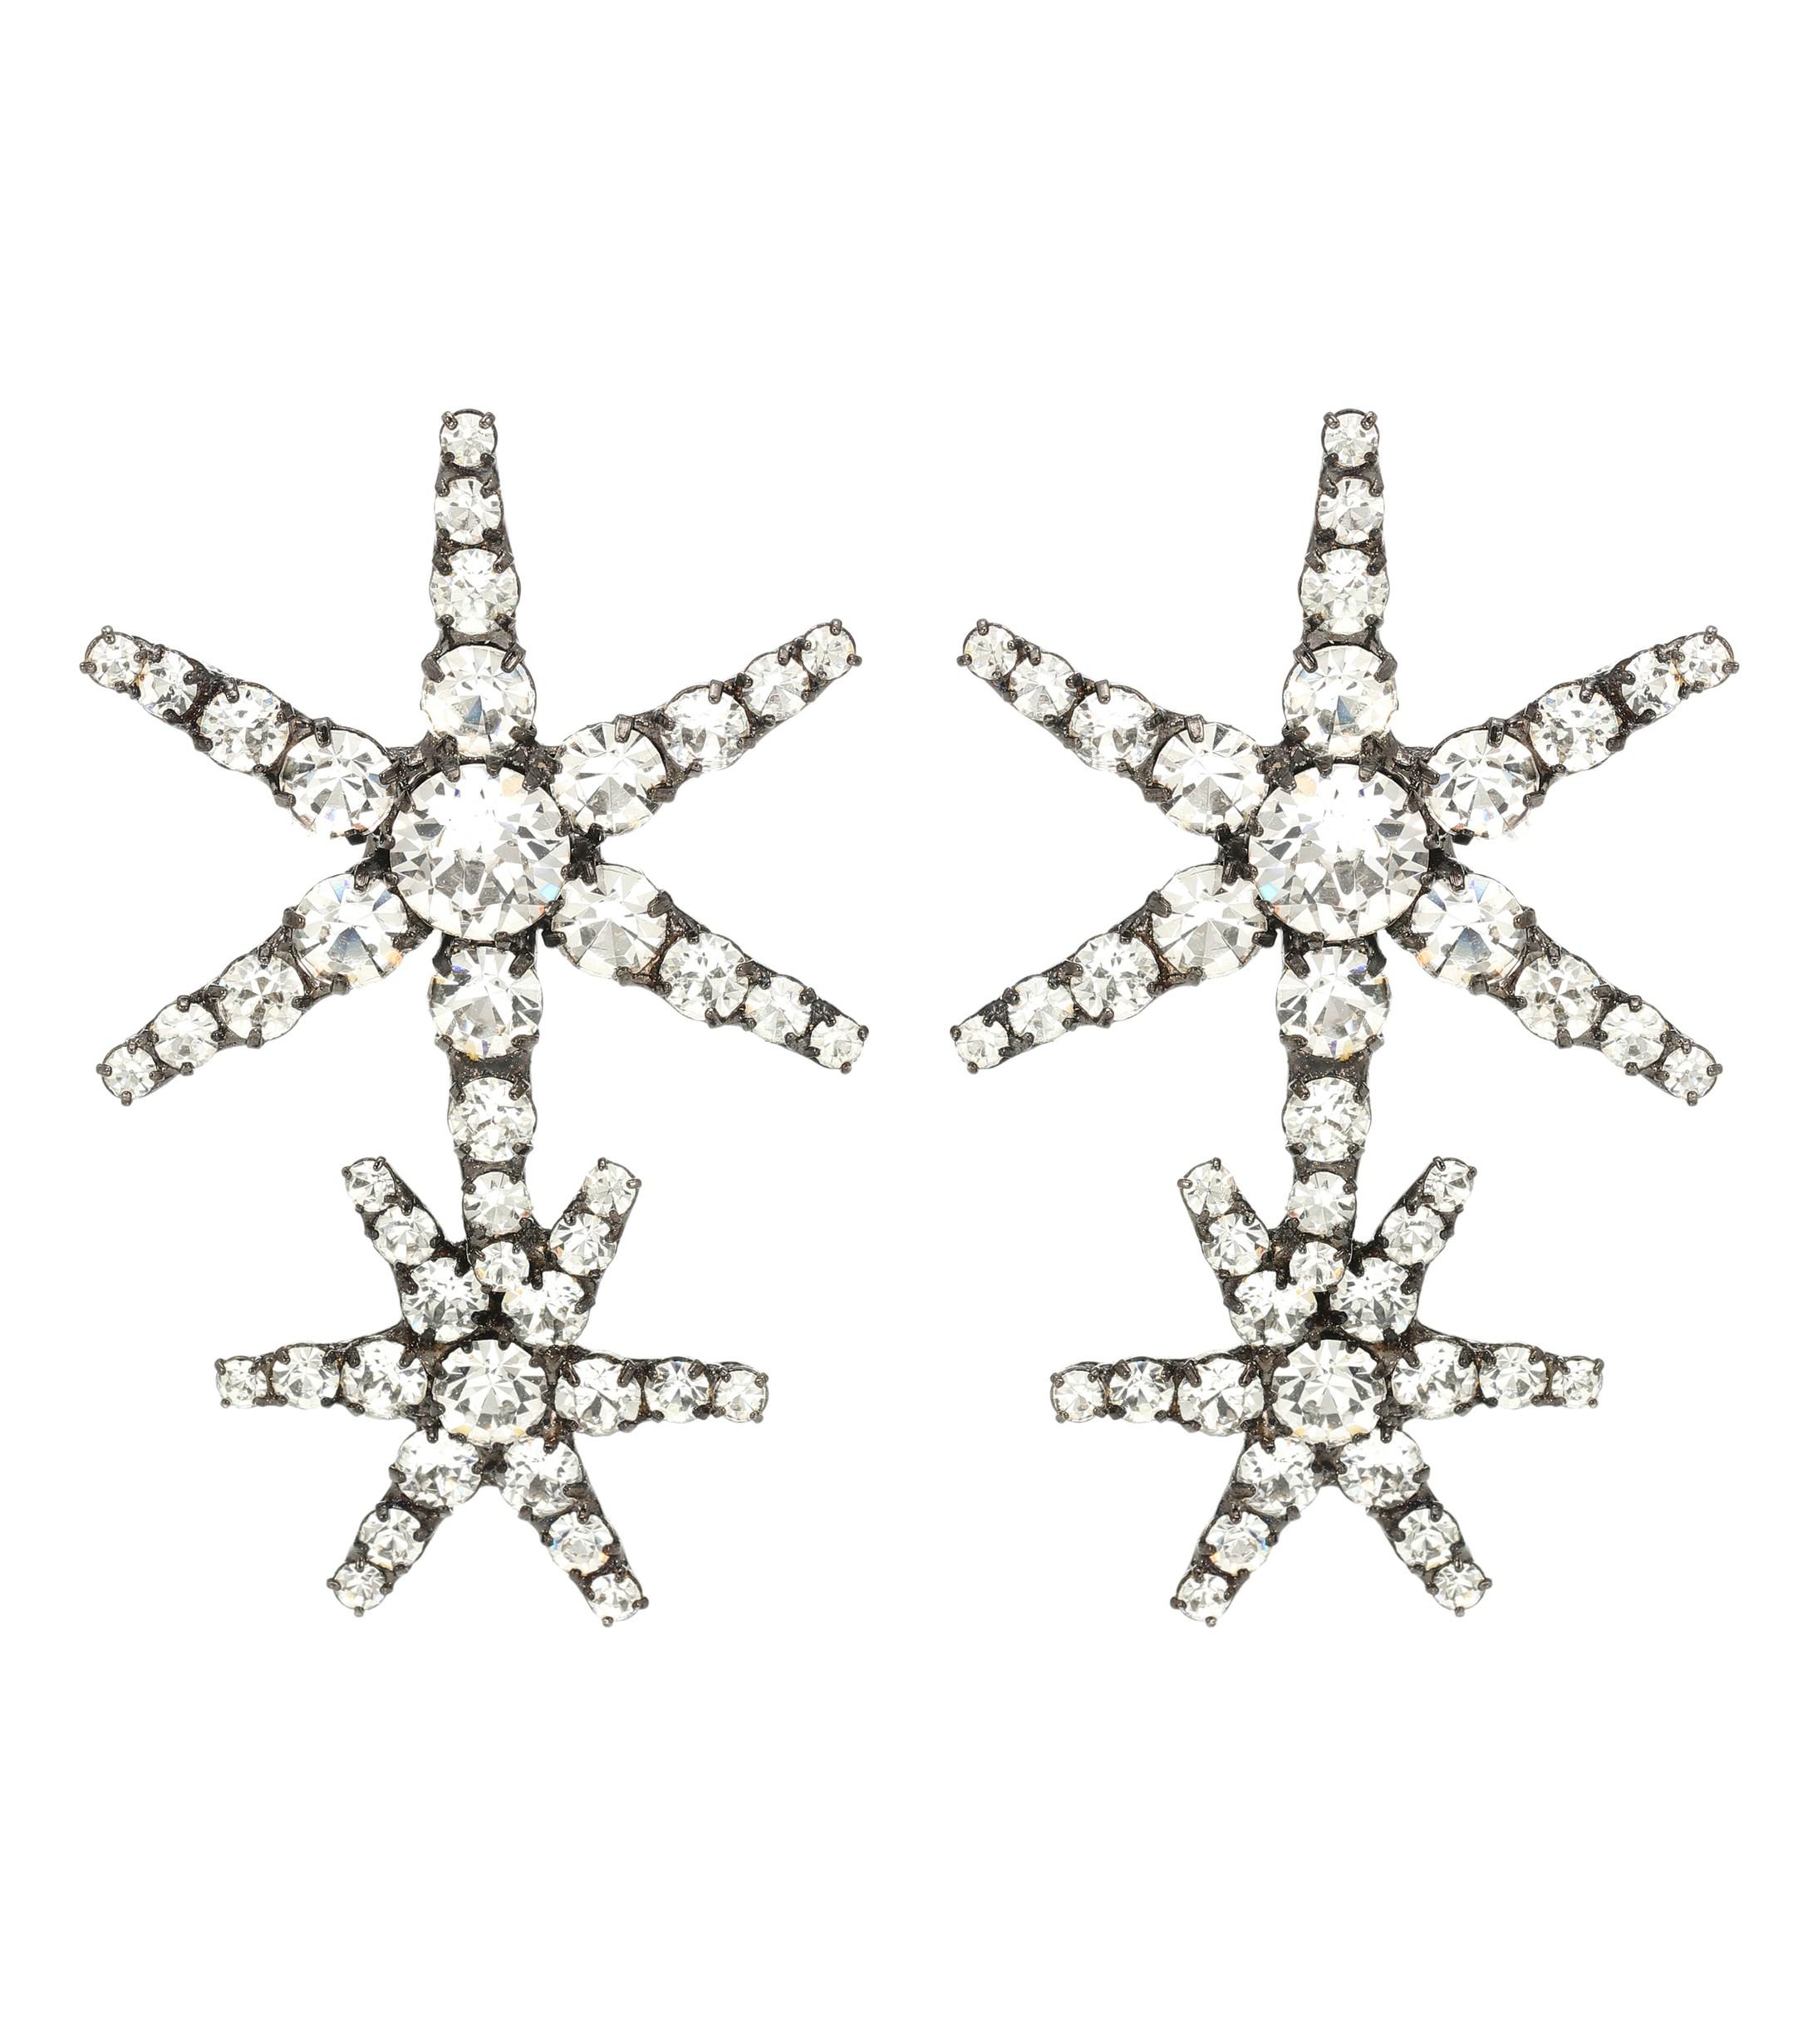 Jennifer Behr Estella Crystal Star Earrings in Silver (Metallic) - Lyst